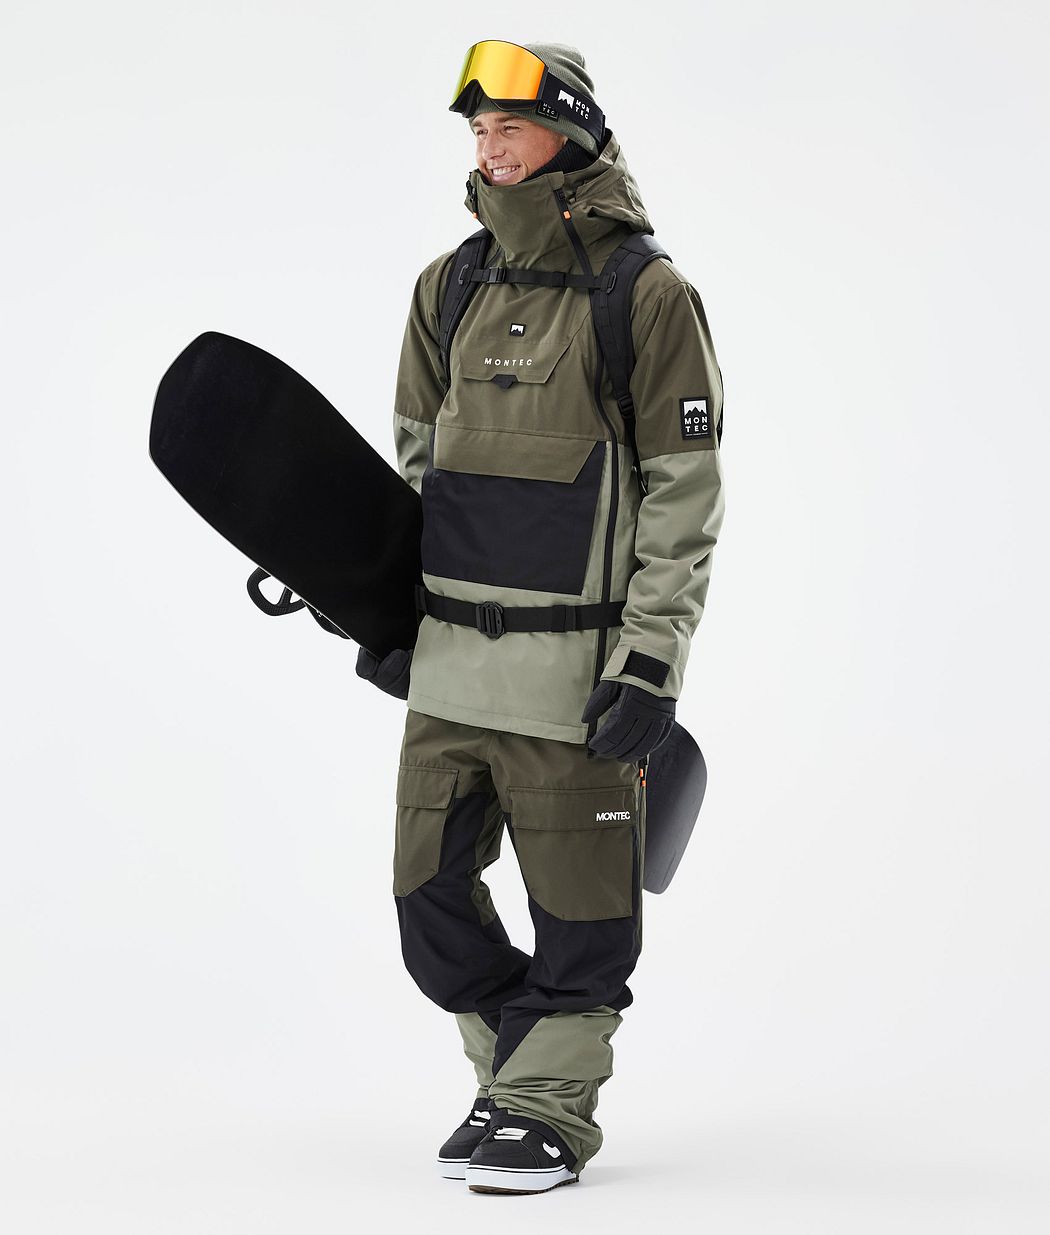 Fawk Snowboard Pants Men Olive Green/Black/Greenish